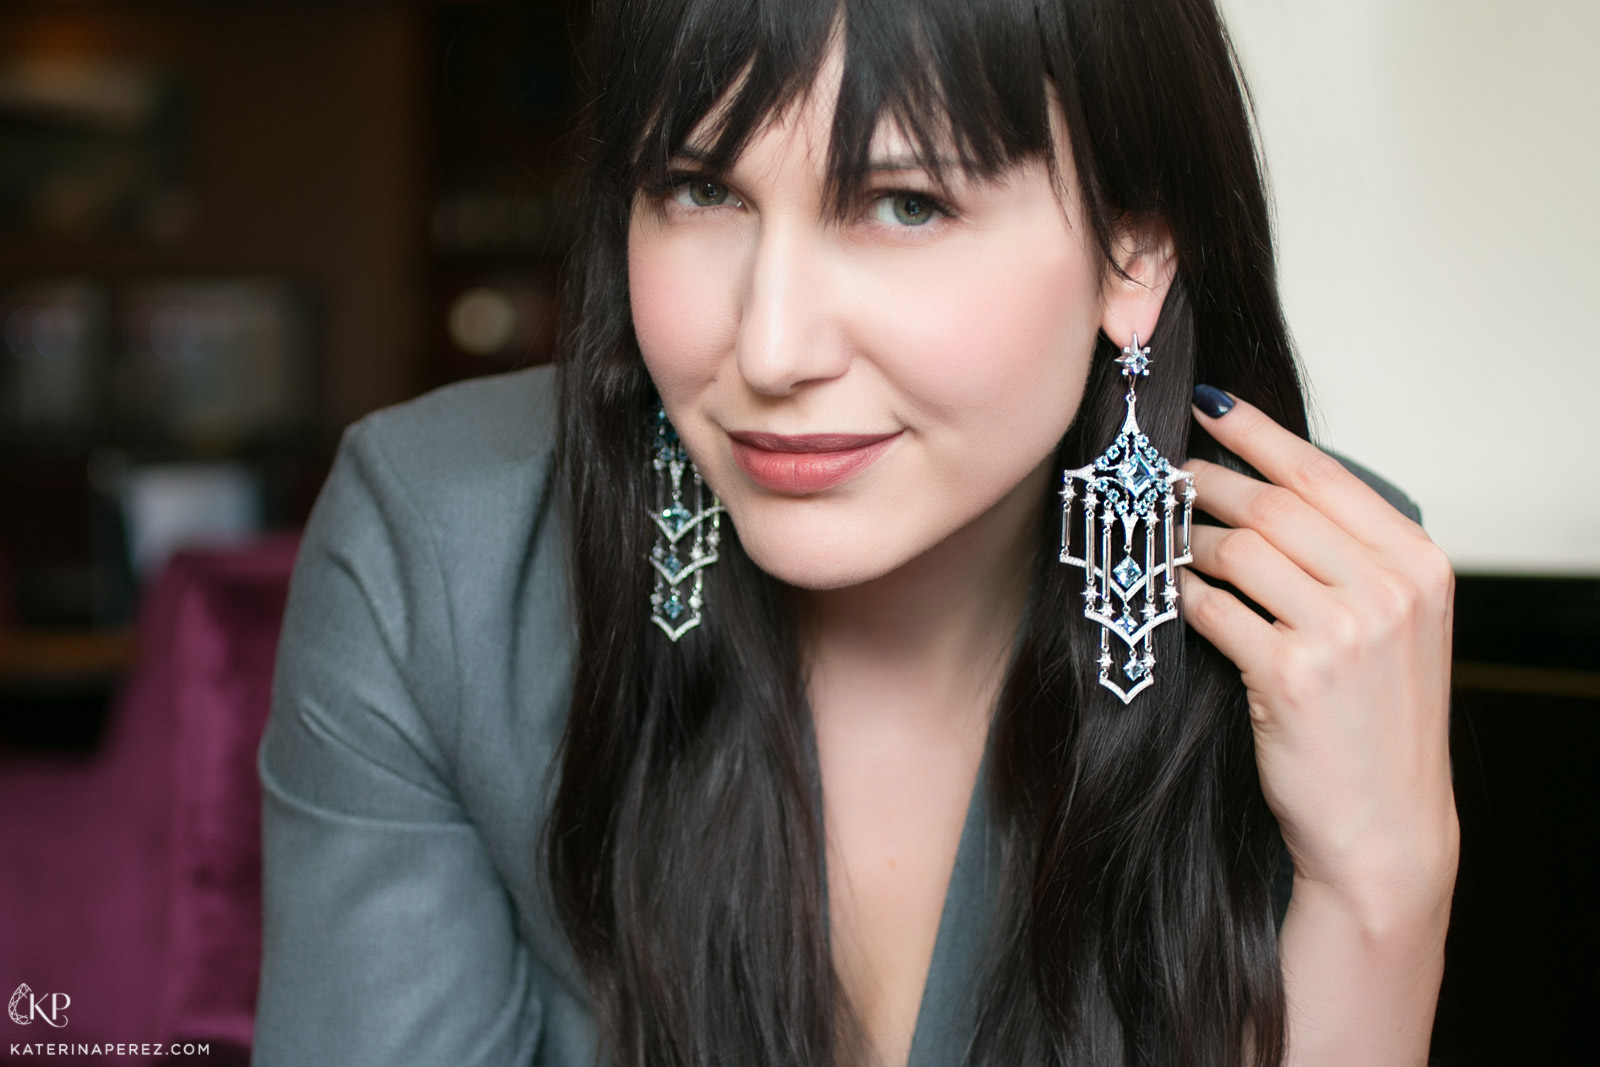 Liza Belotserkovskaya Arthur earrings in white gold with topaz and diamonds